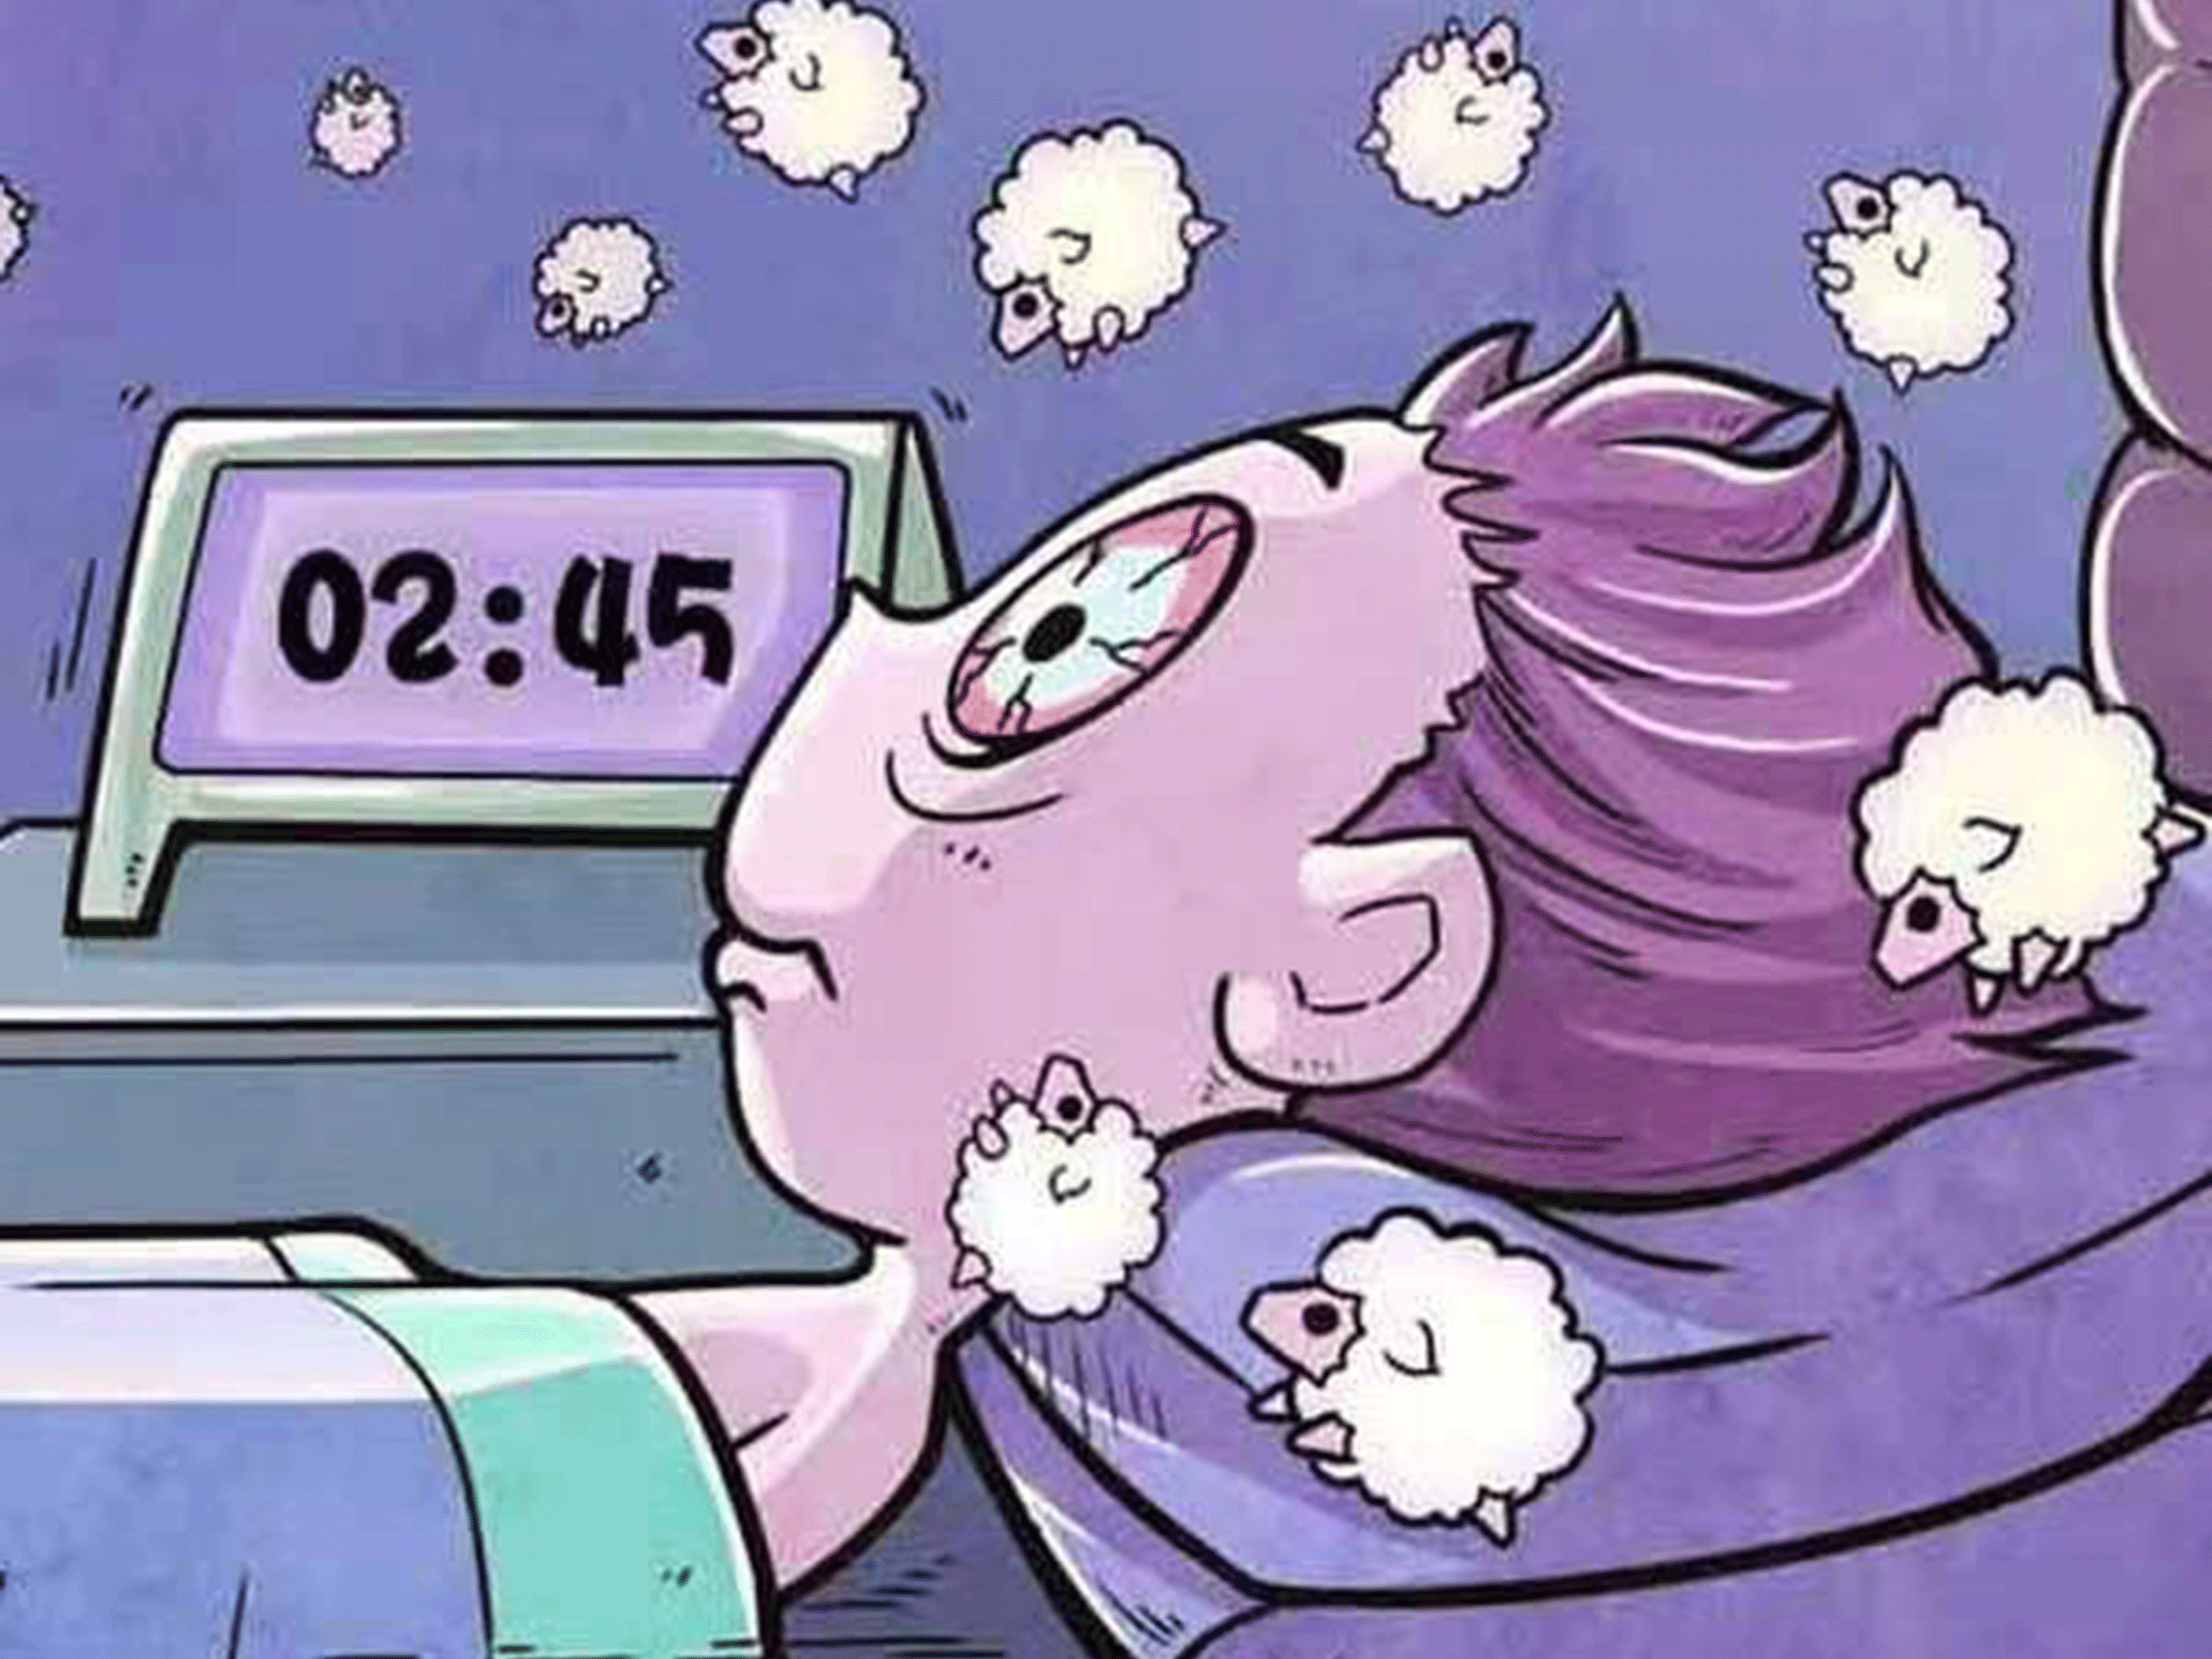 睡眠障碍症卡通图片